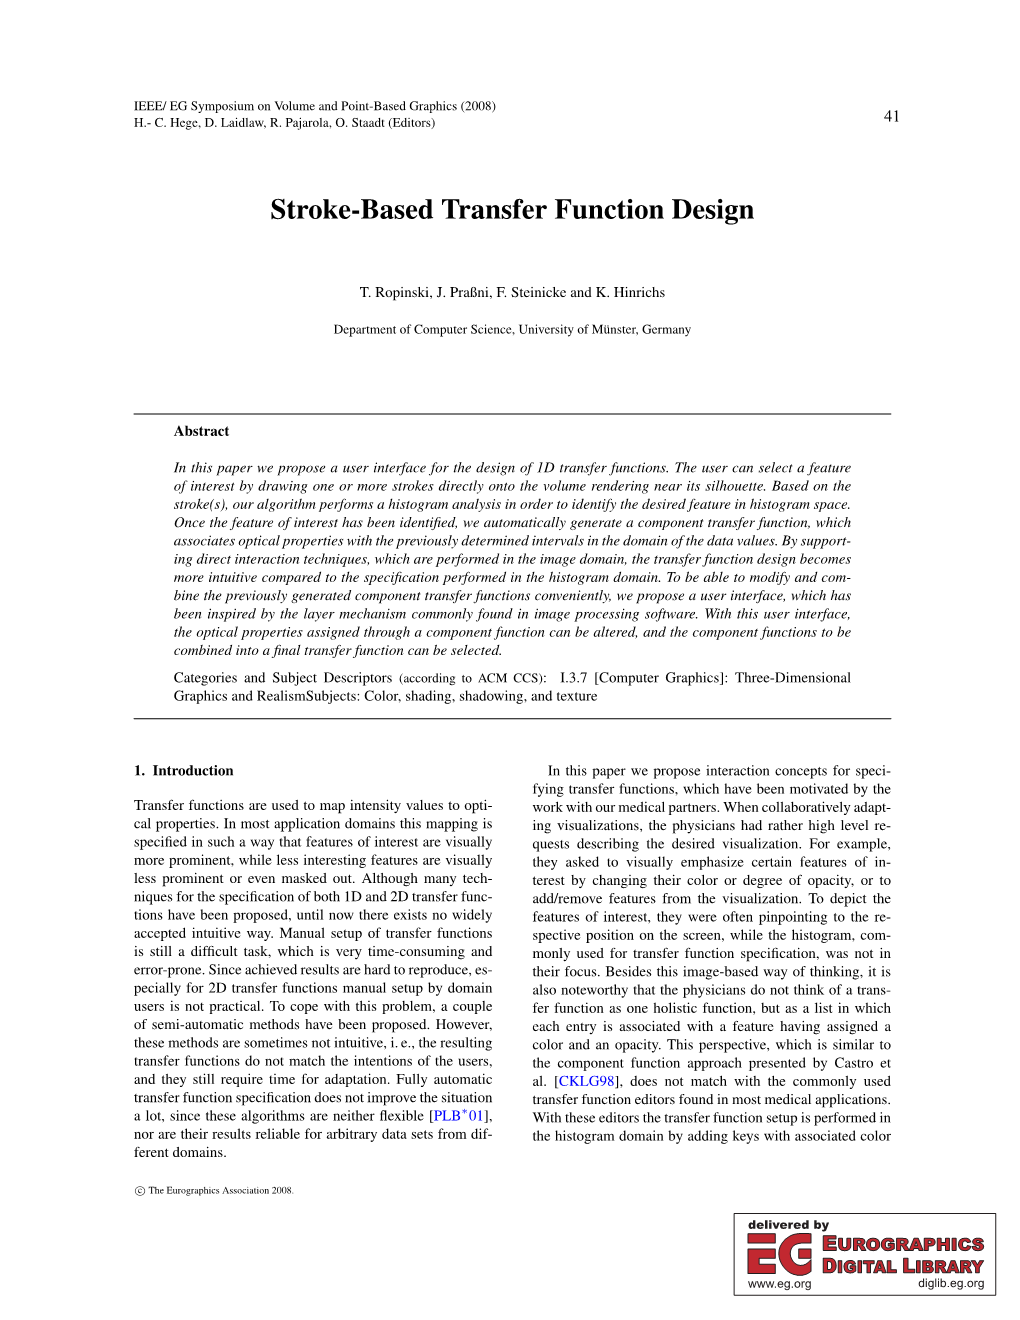 Stroke-Based Transfer Function Design